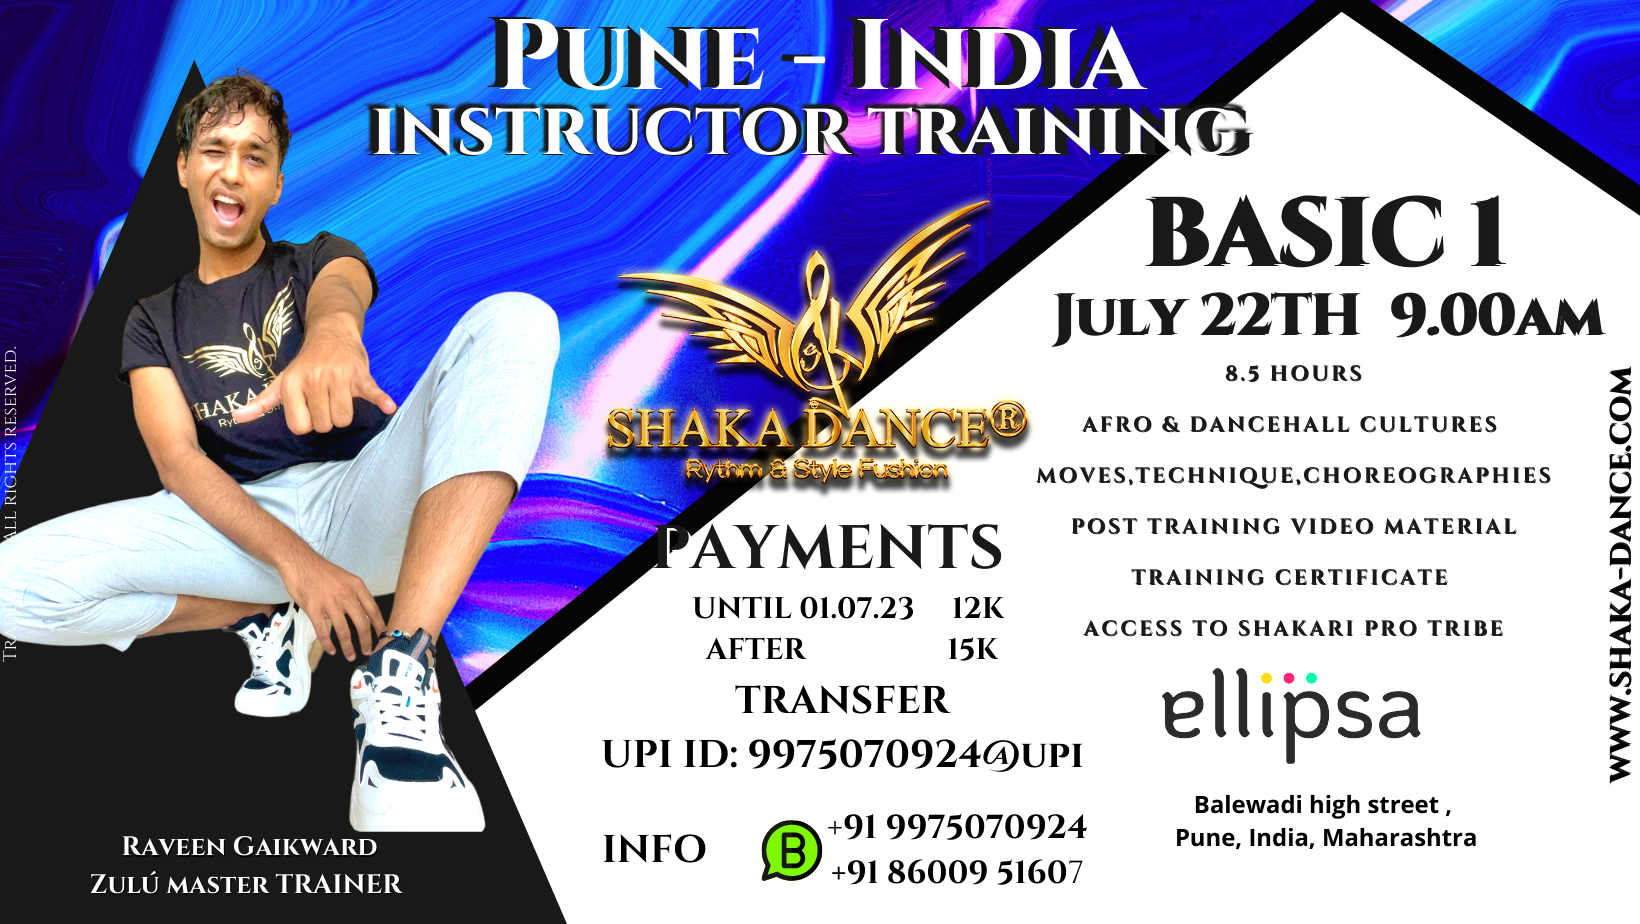 SHAKA DANCE®  B1 INSTRUCTOR TRAINING PUNE-INDIA